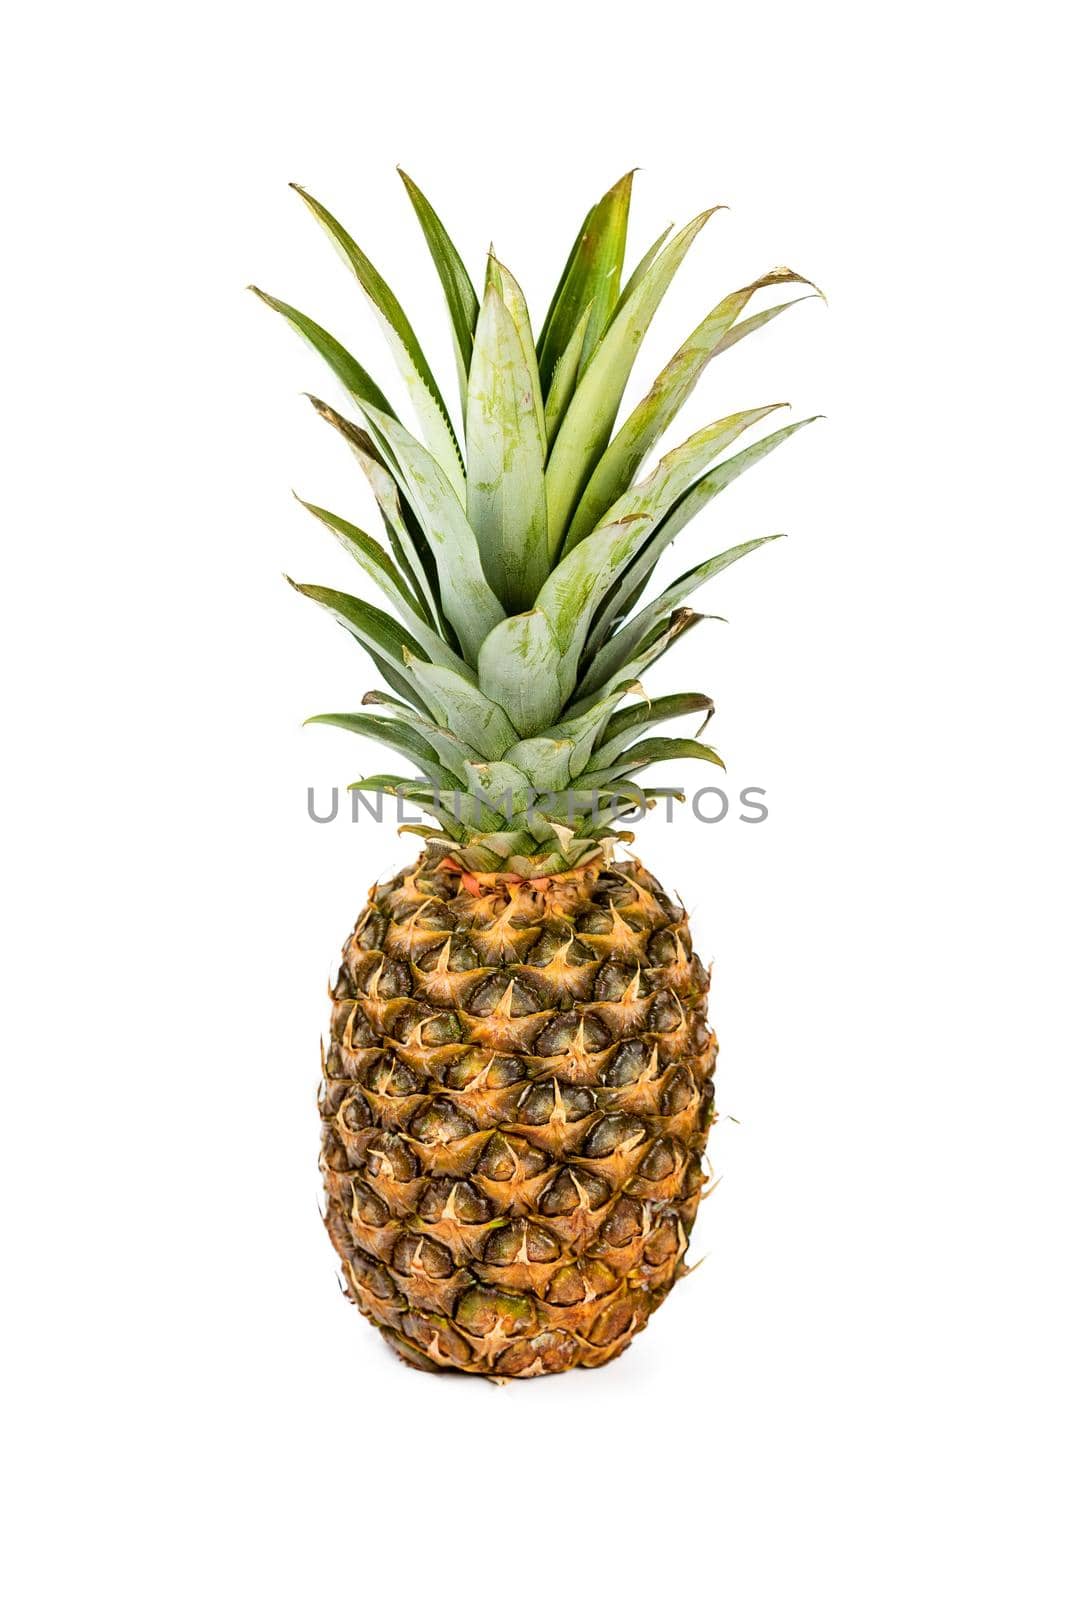 .Fresh pineapple fruit isolated on white background.